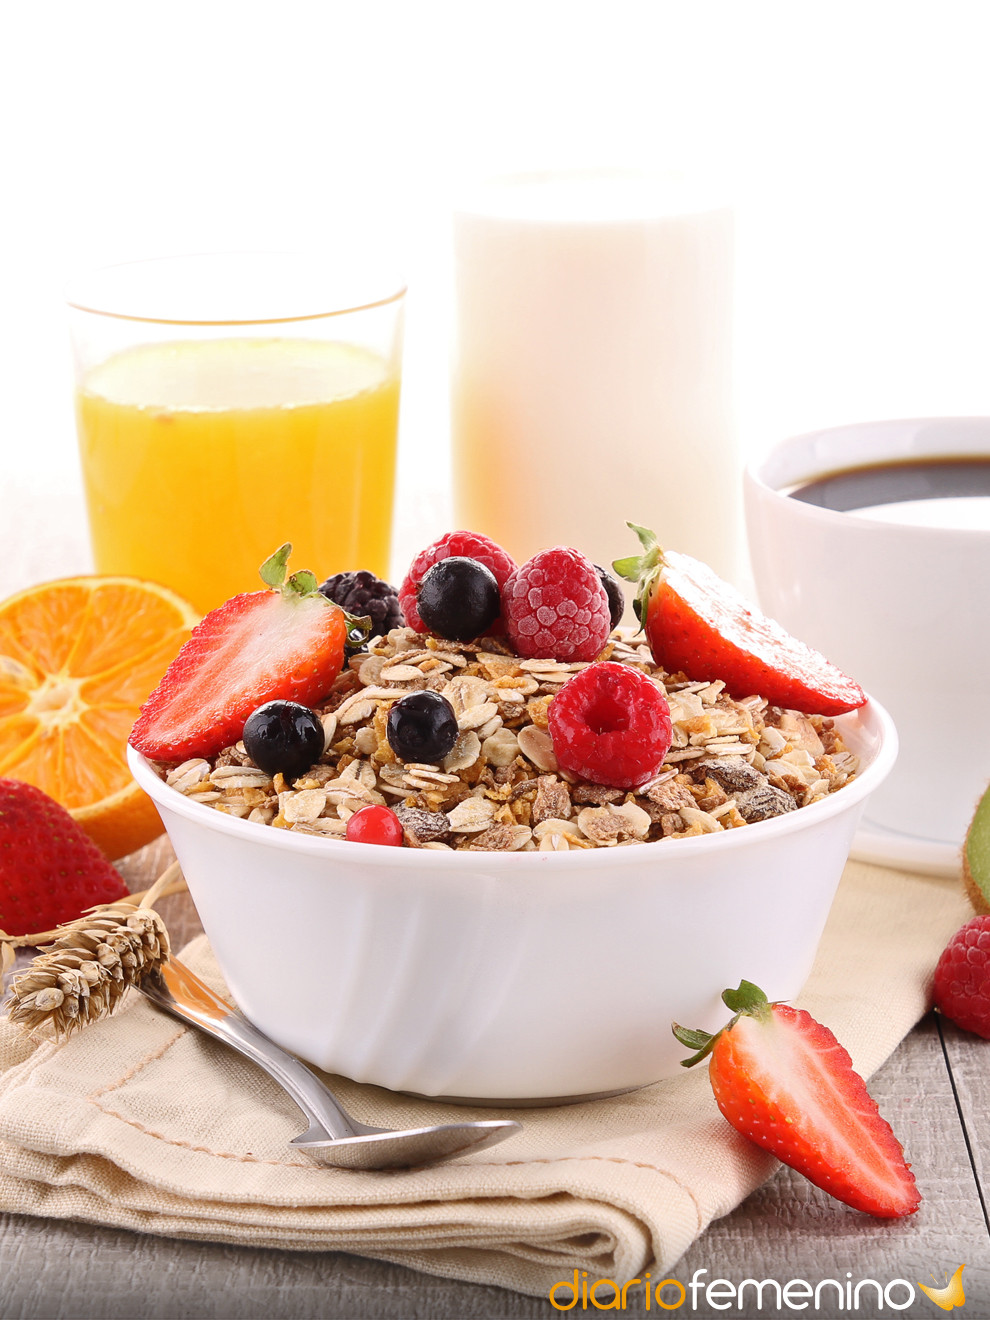 Recetas de desayunos ricos en fibra: evita el estreñimiento y adelgaza